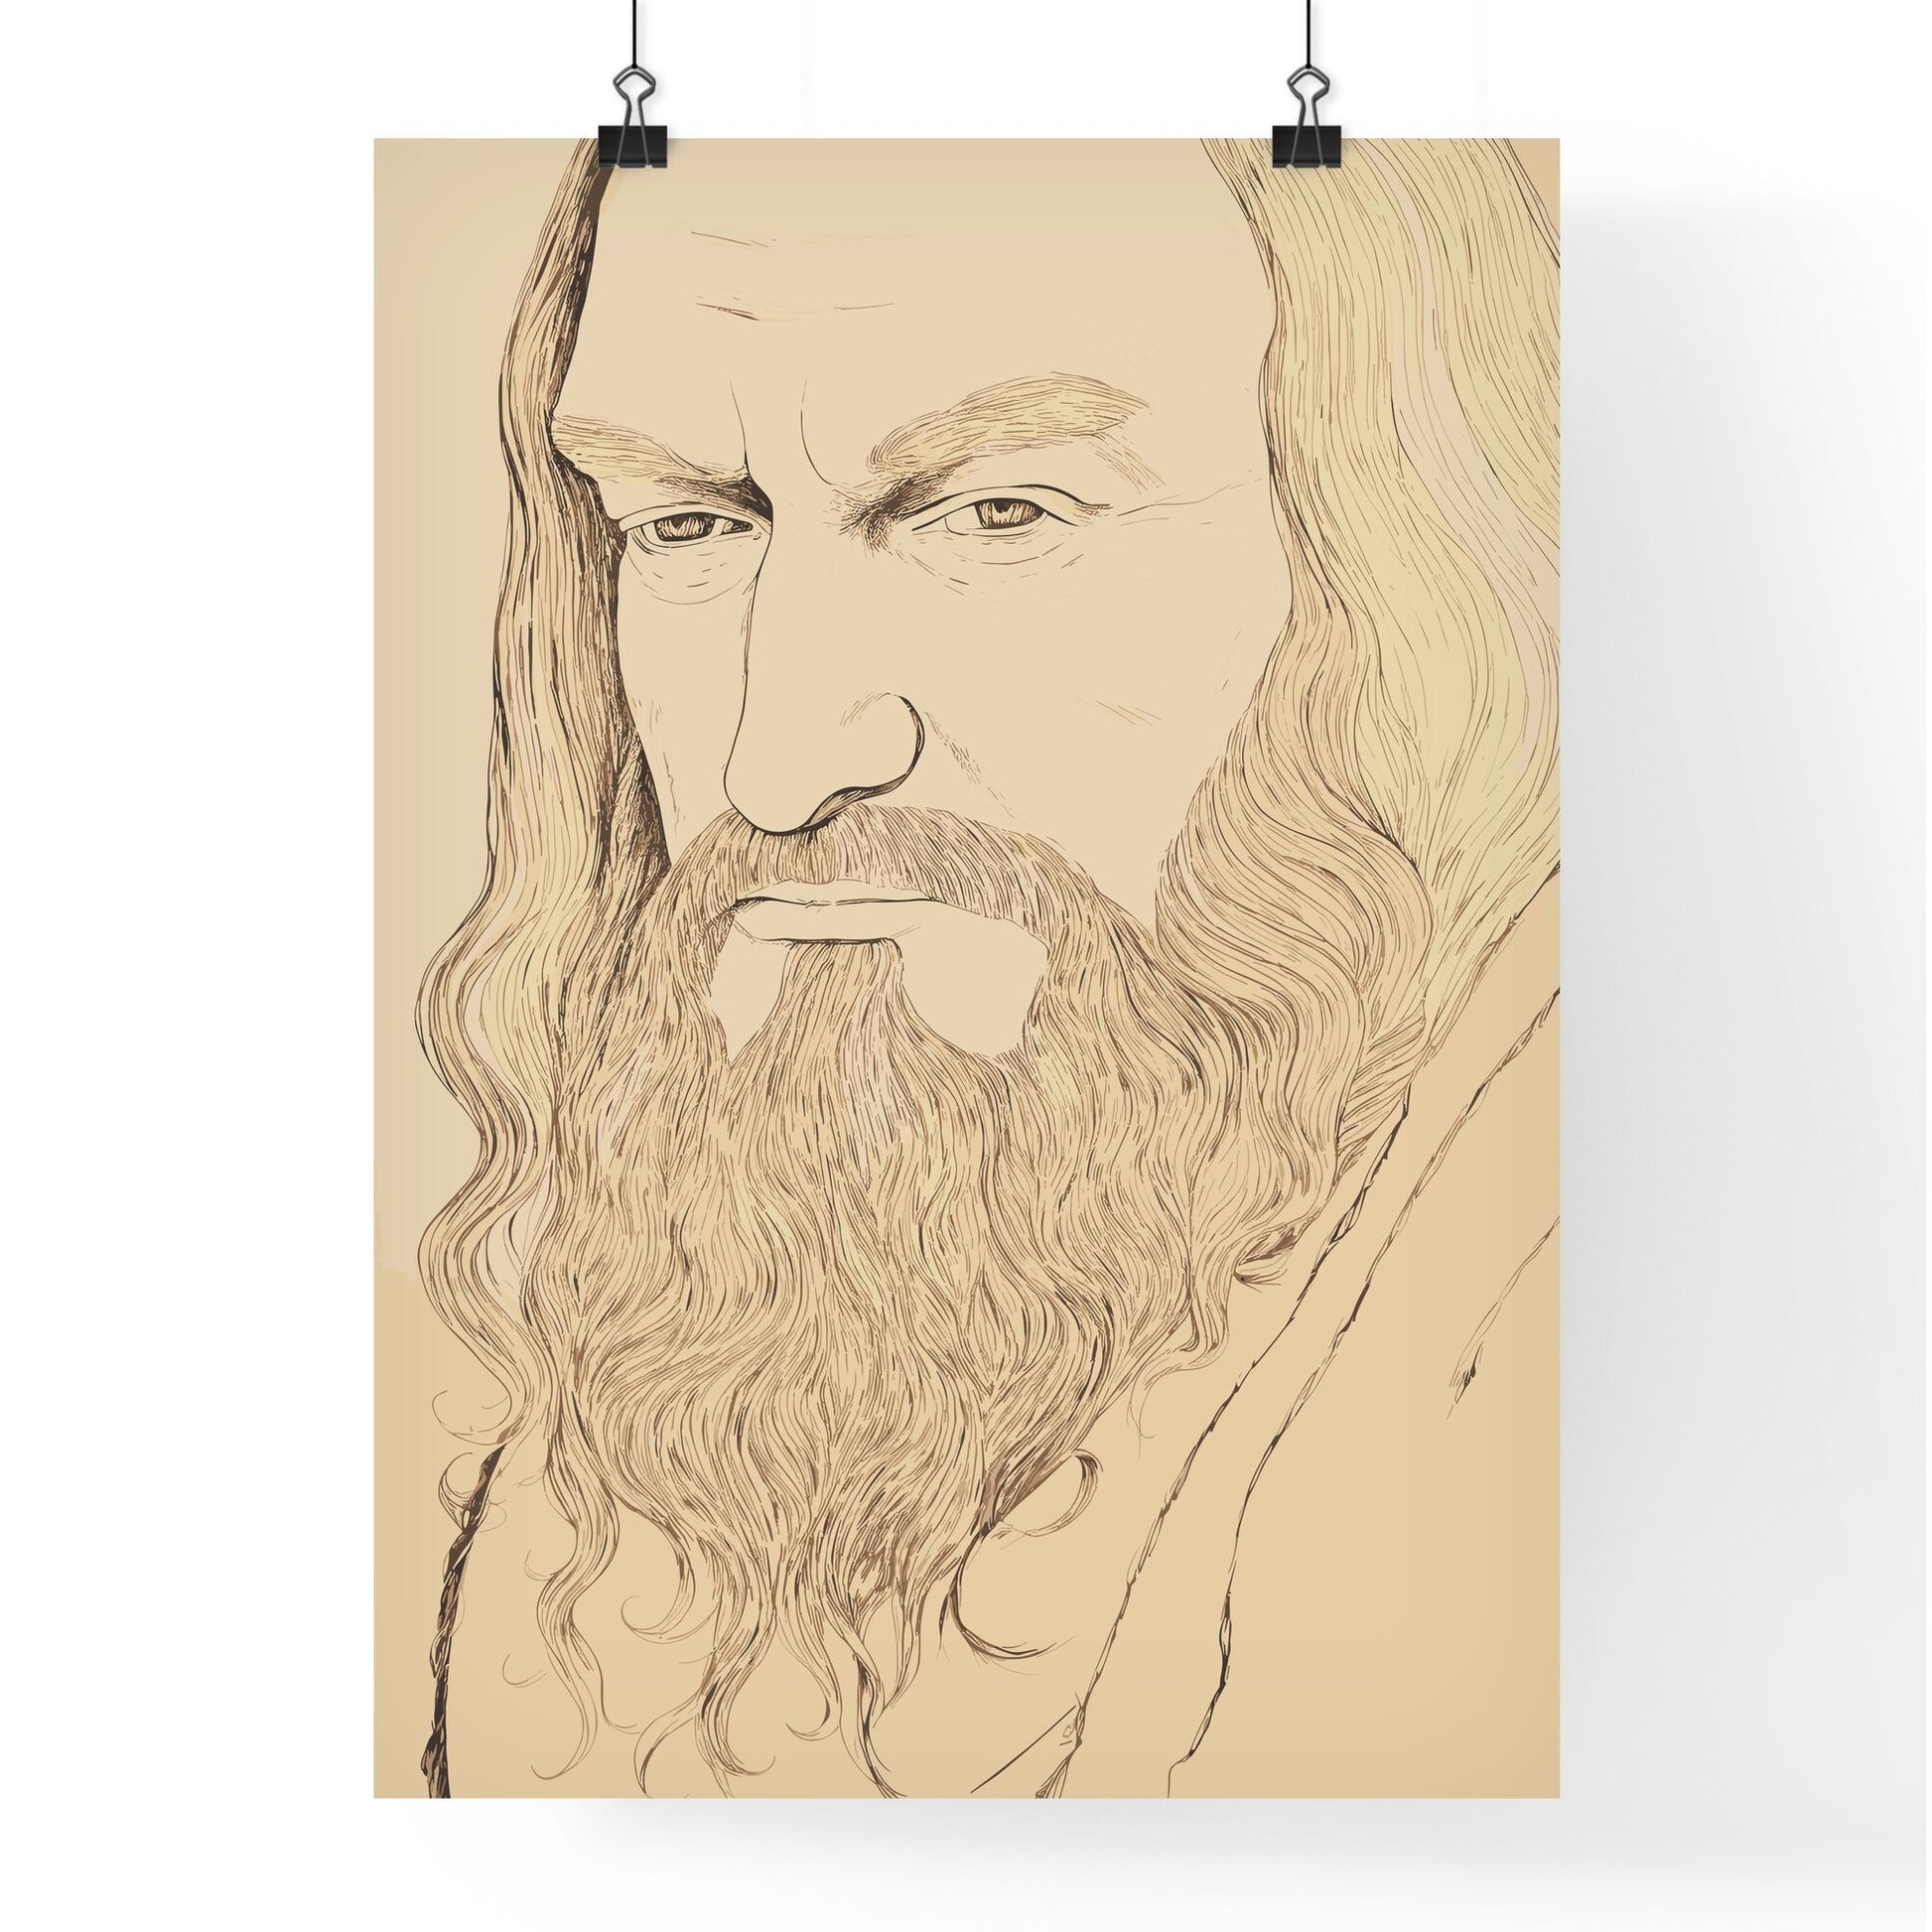 Portrait Of Albrecht Dürer - A Drawing Of A Man With Long Hair And A Beard Default Title